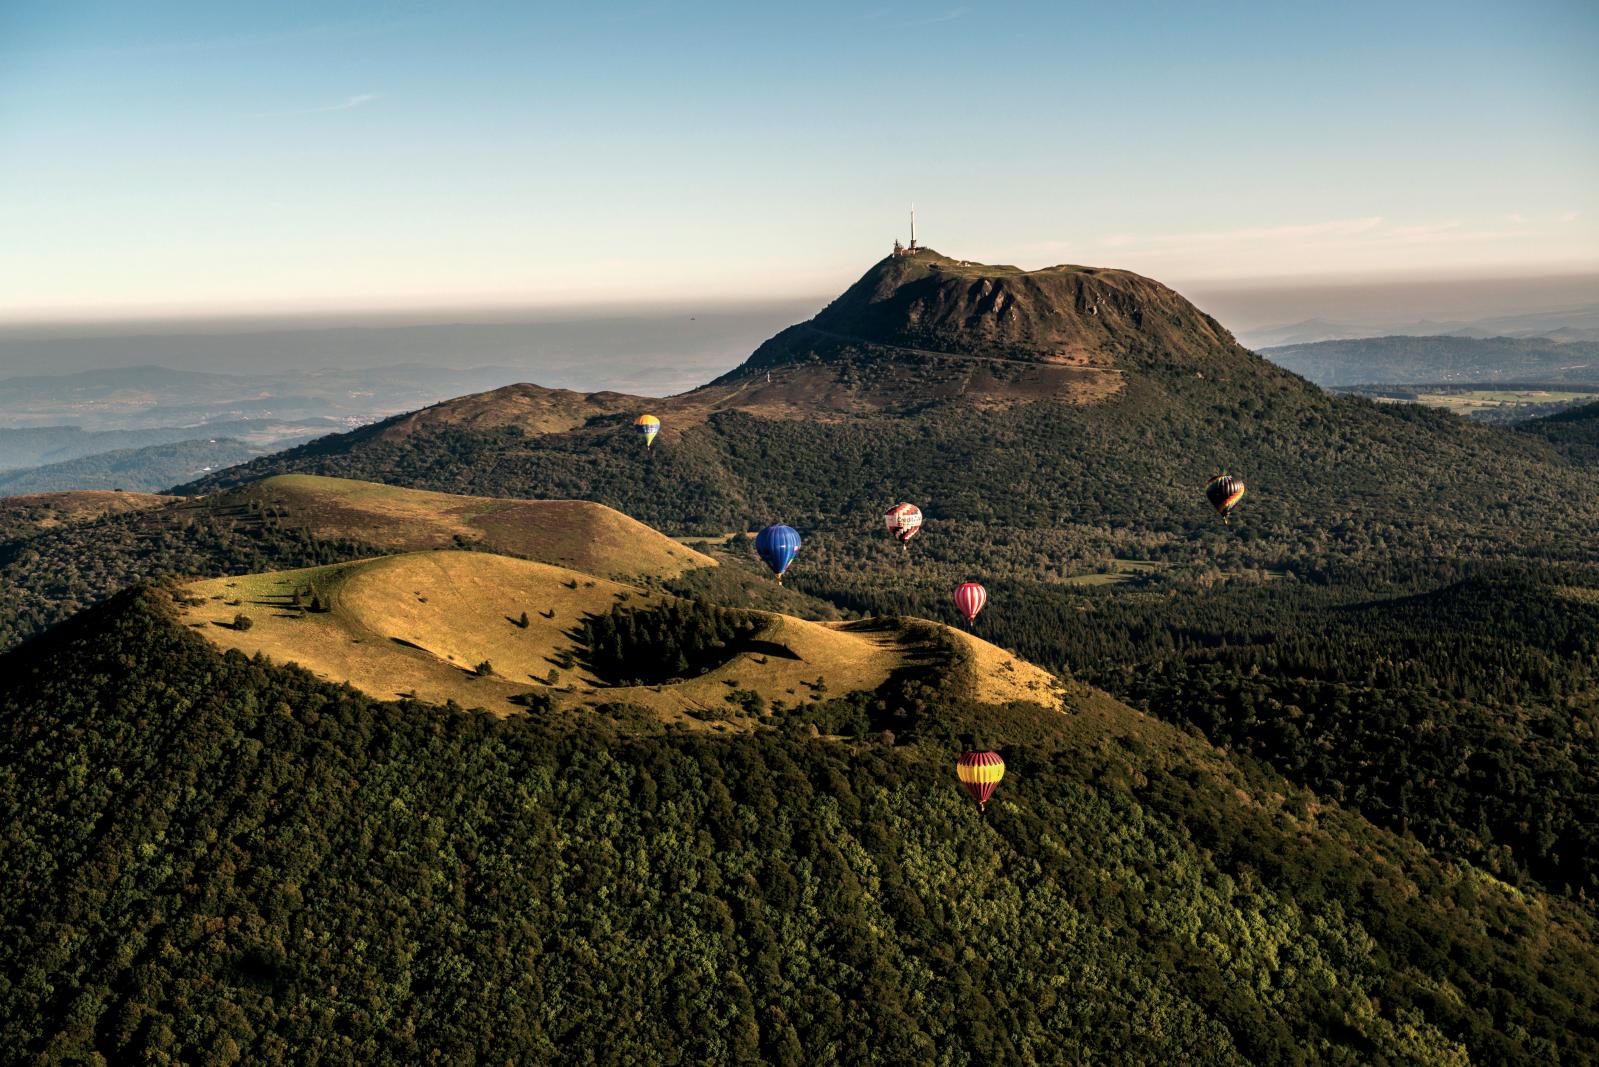 Les volcans de la chaîne des Puys. Leur candidature est présentée à l’Unesco cet été.